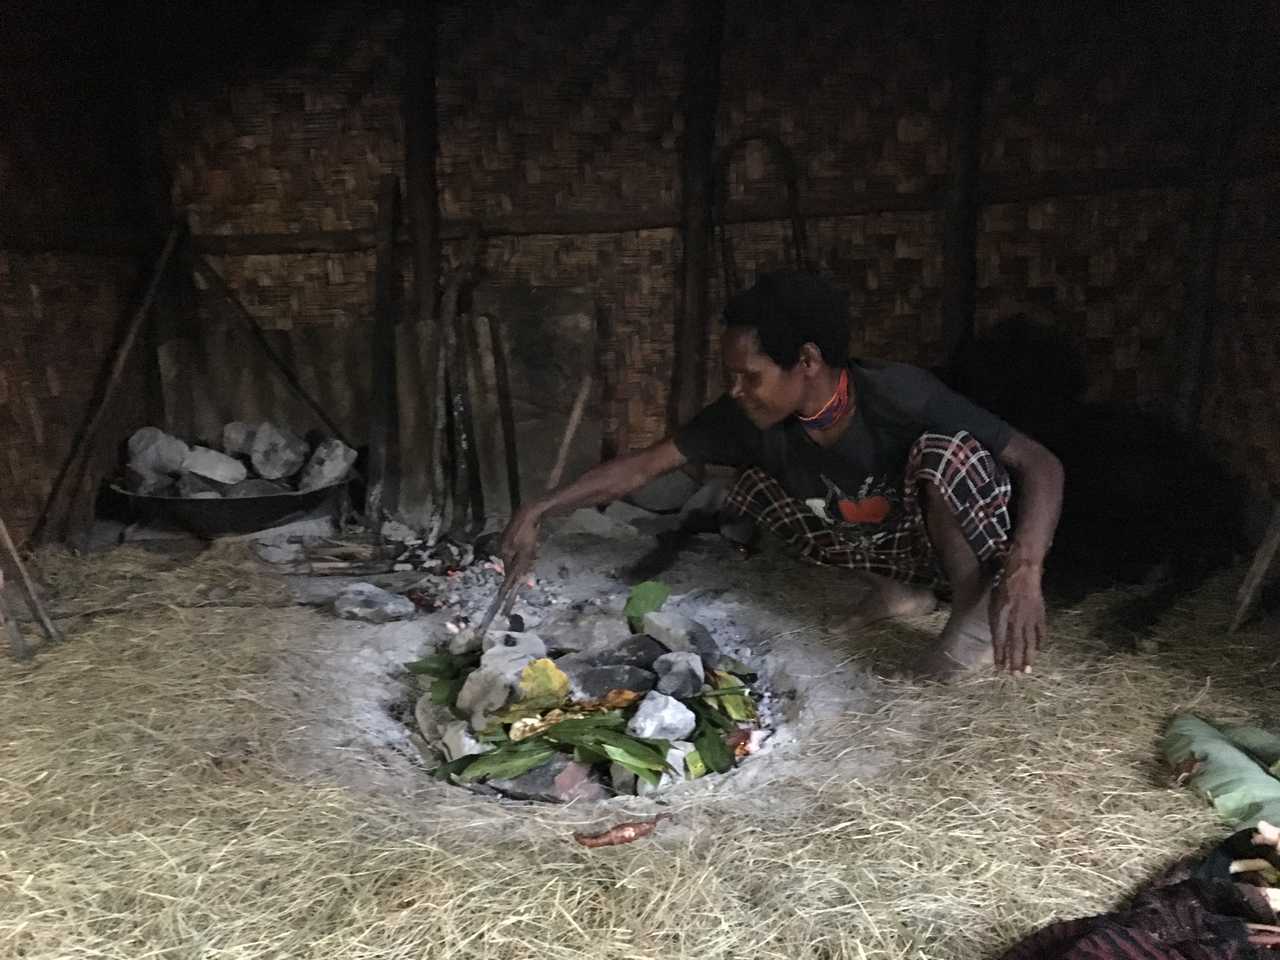 Cuisine au feu de bois, Vallée de Baliem, Papouasie, Indonésie